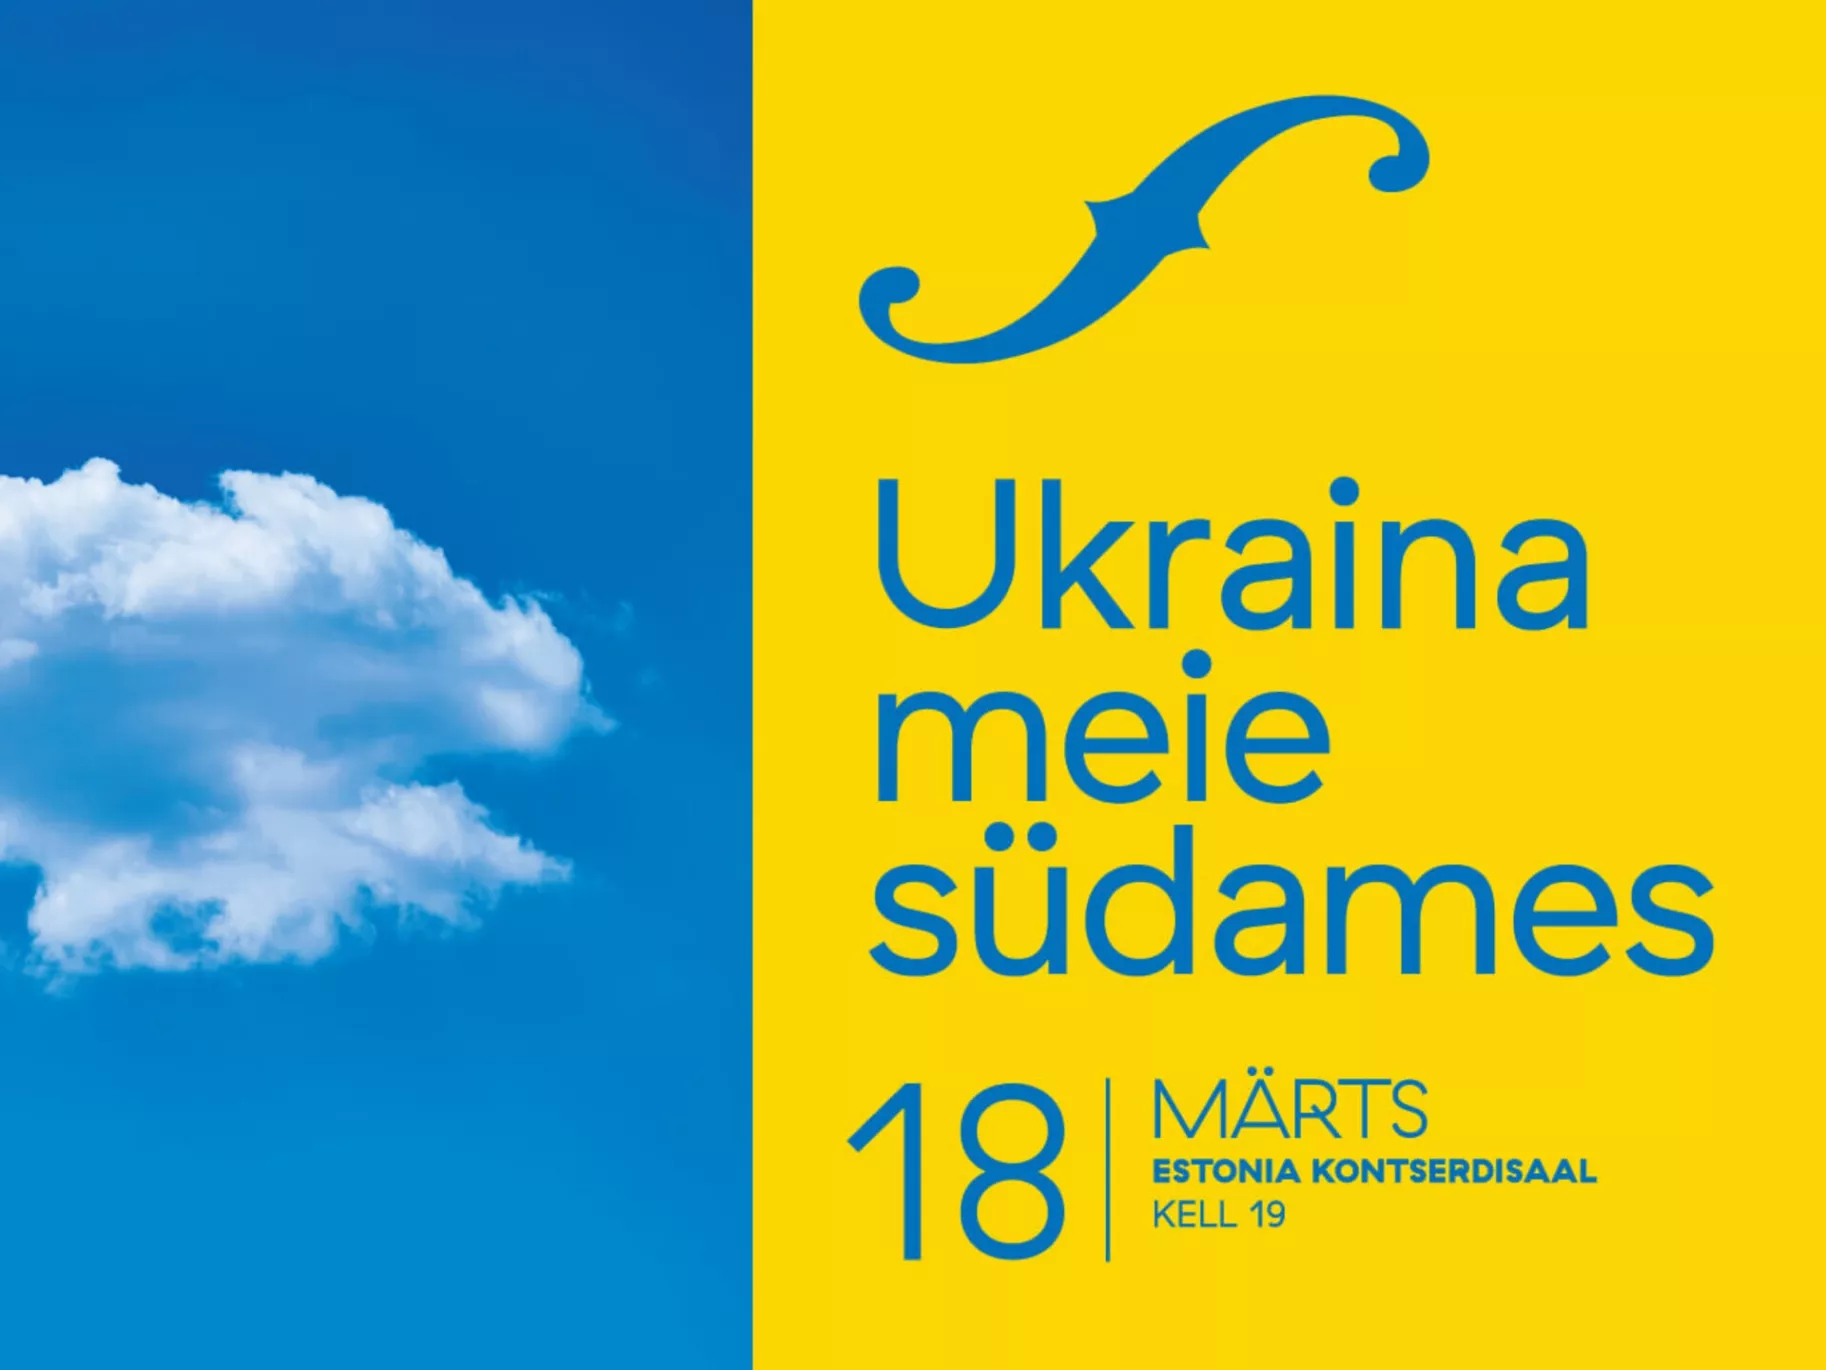 Естонський телеканал ETV провів телемарафон на підтримку України